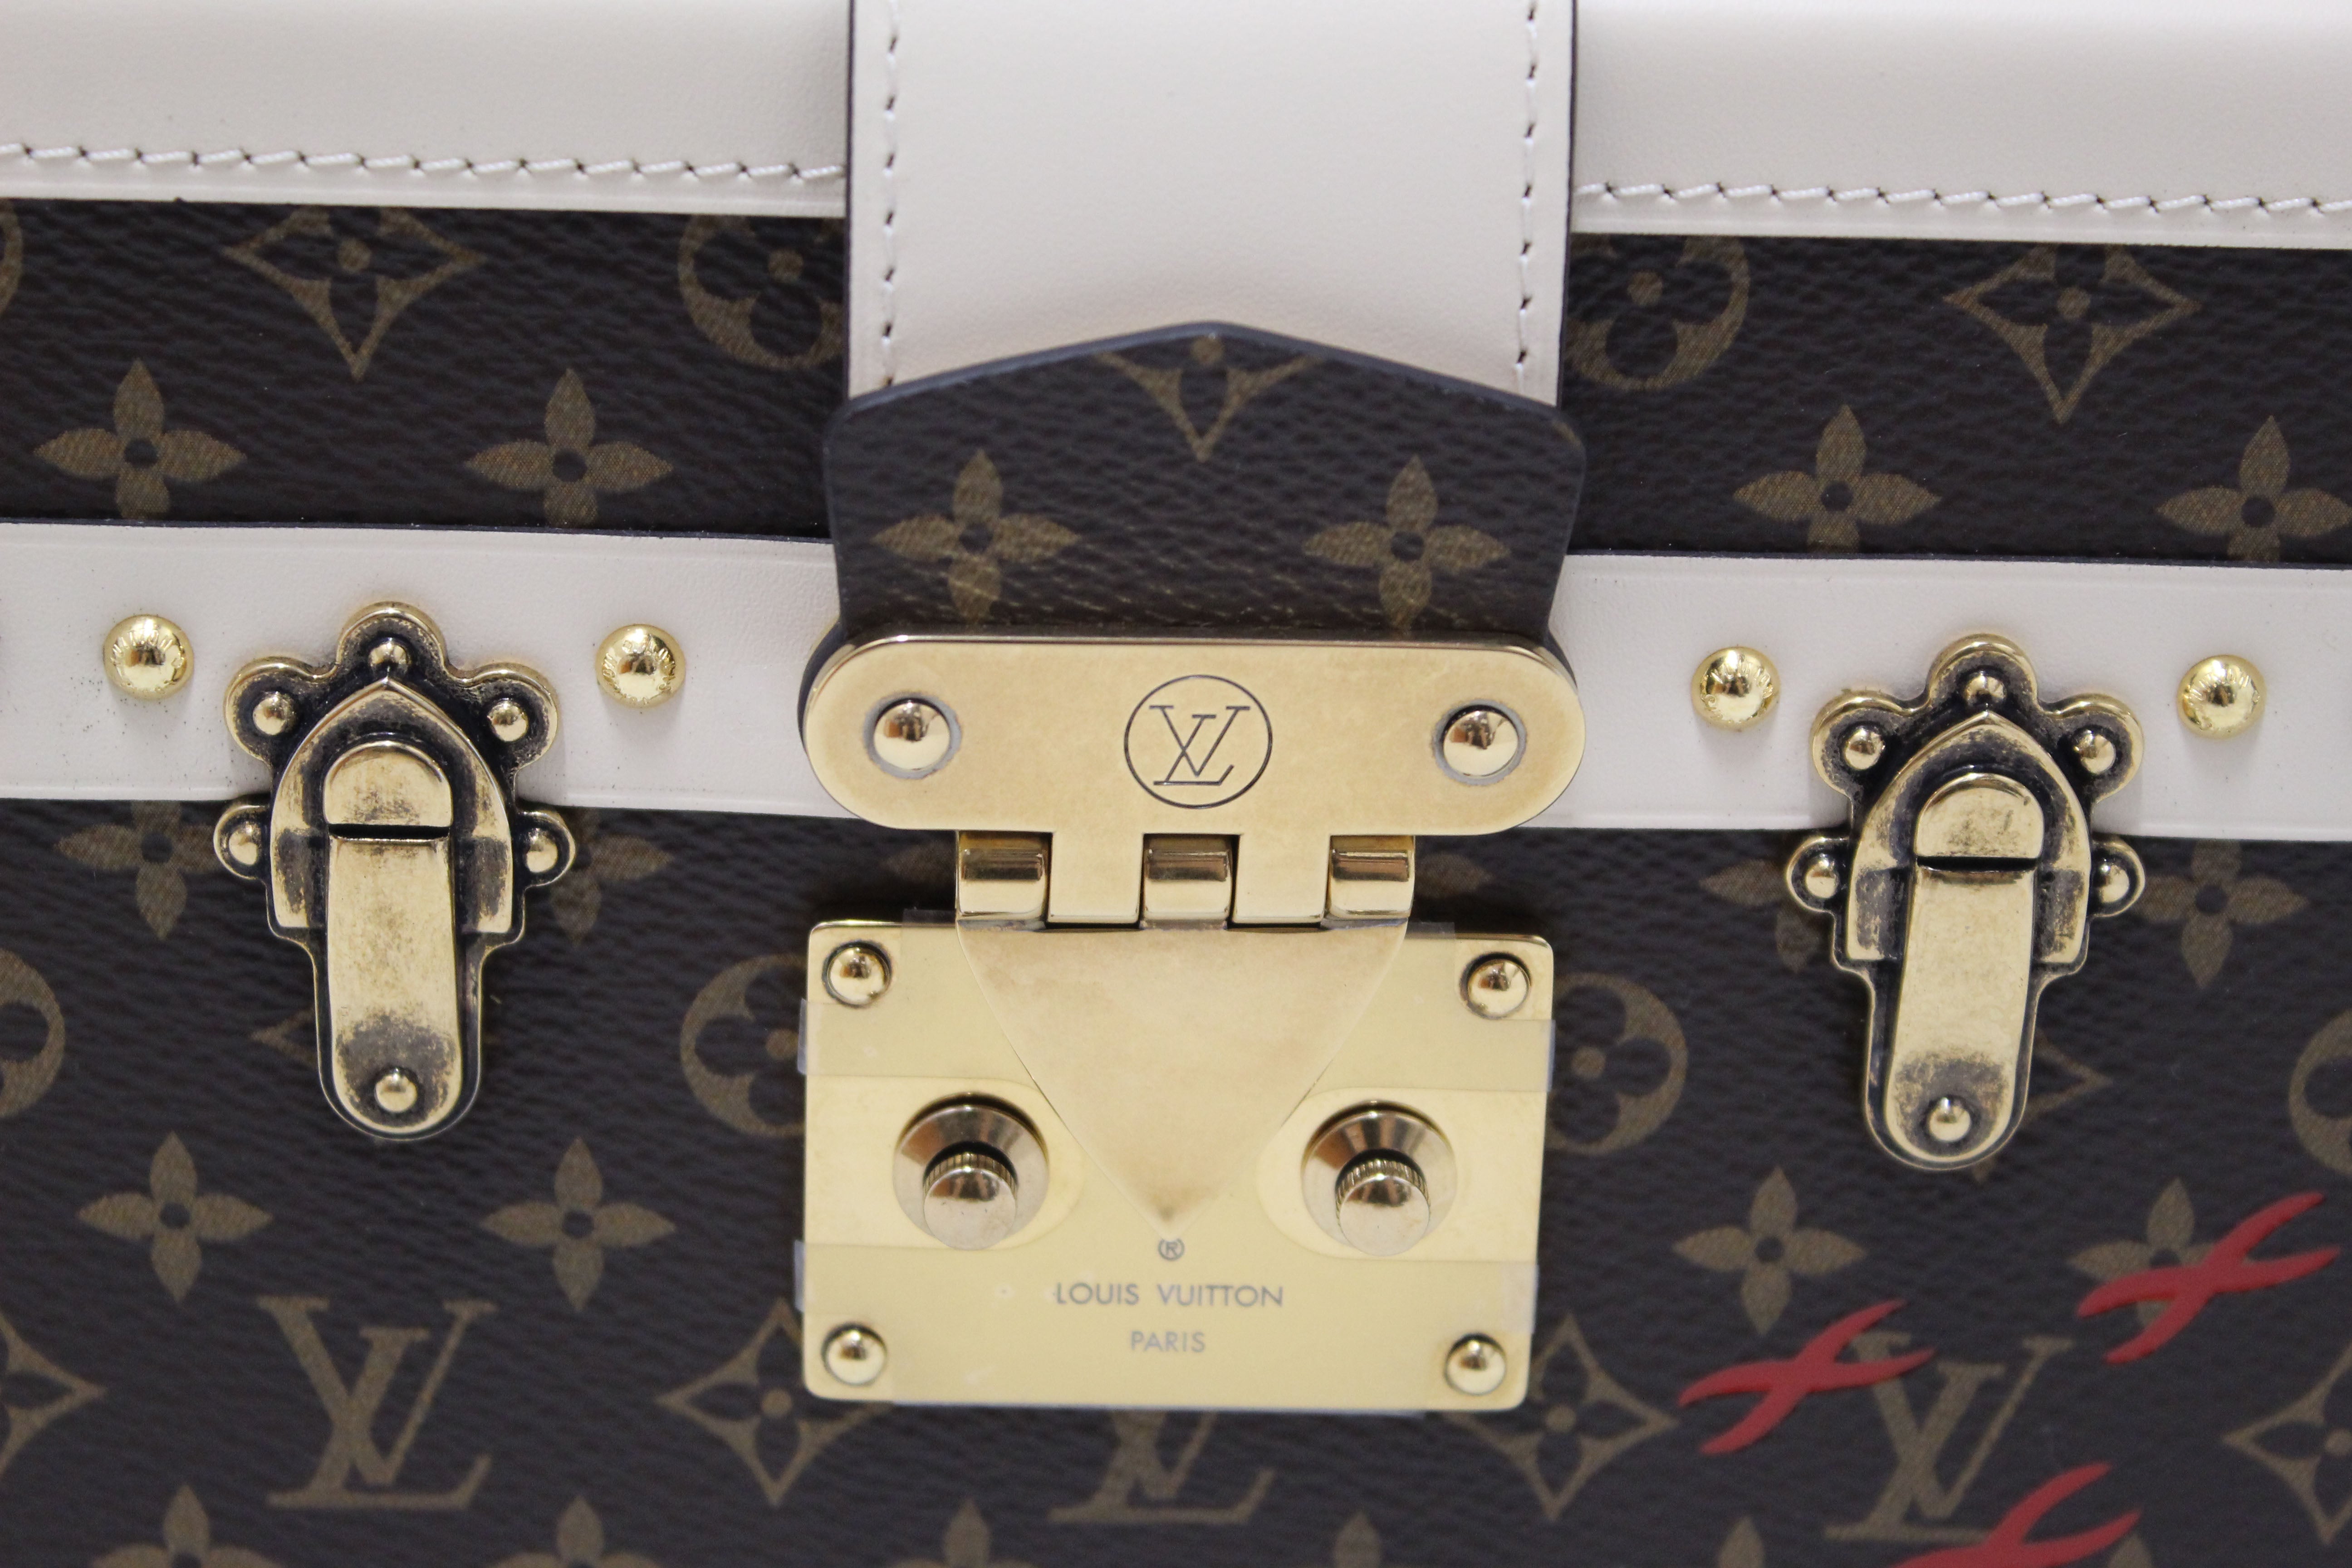 Louis Vuitton Classic Monogram Petite Malle Clutch Bag